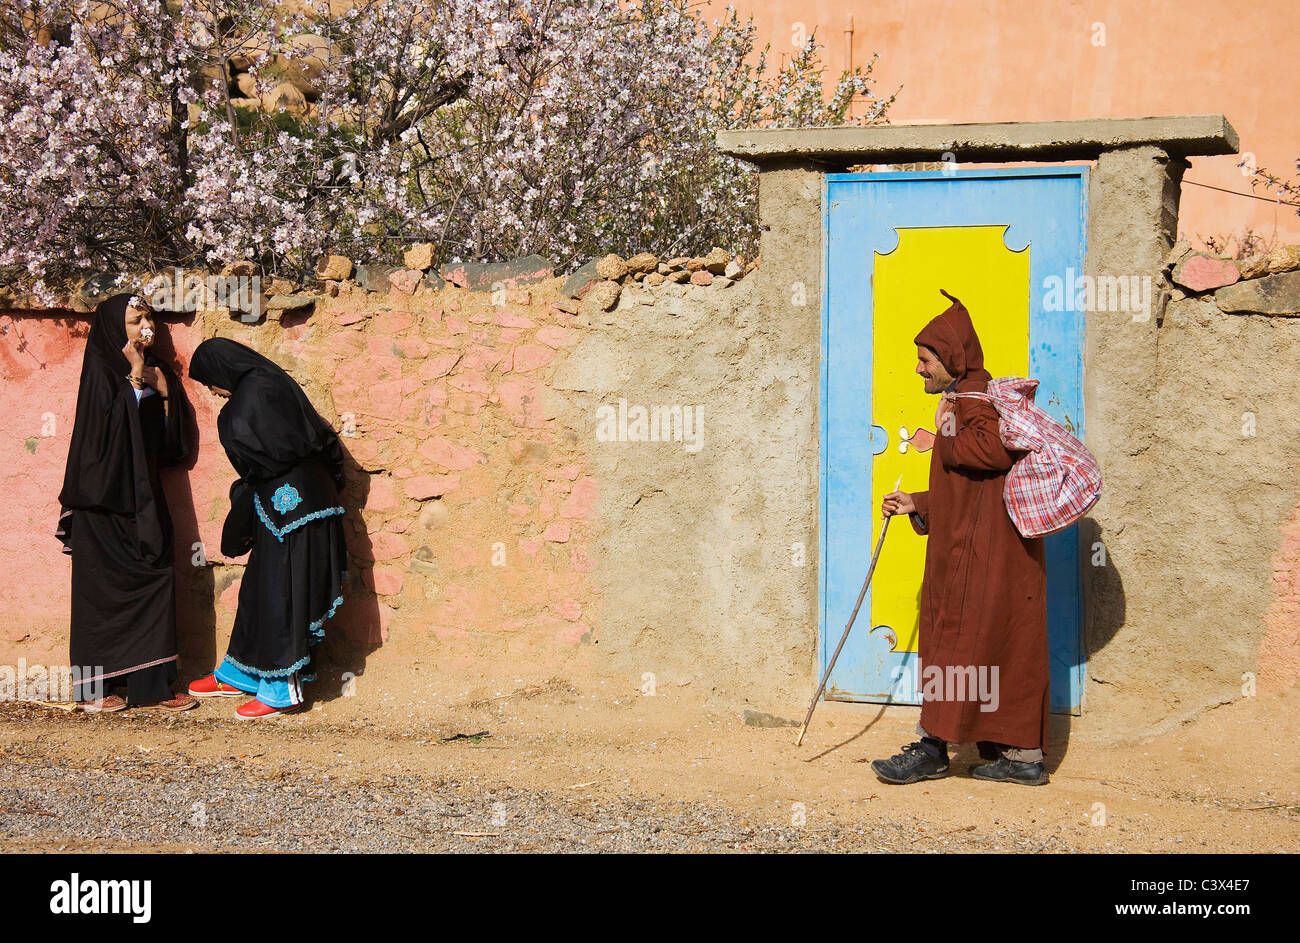 La chat donne berbere e Berber uomo passando in un villaggio vicino alla città di Tafraoute nella valle di Ameln, Marocco Foto Stock